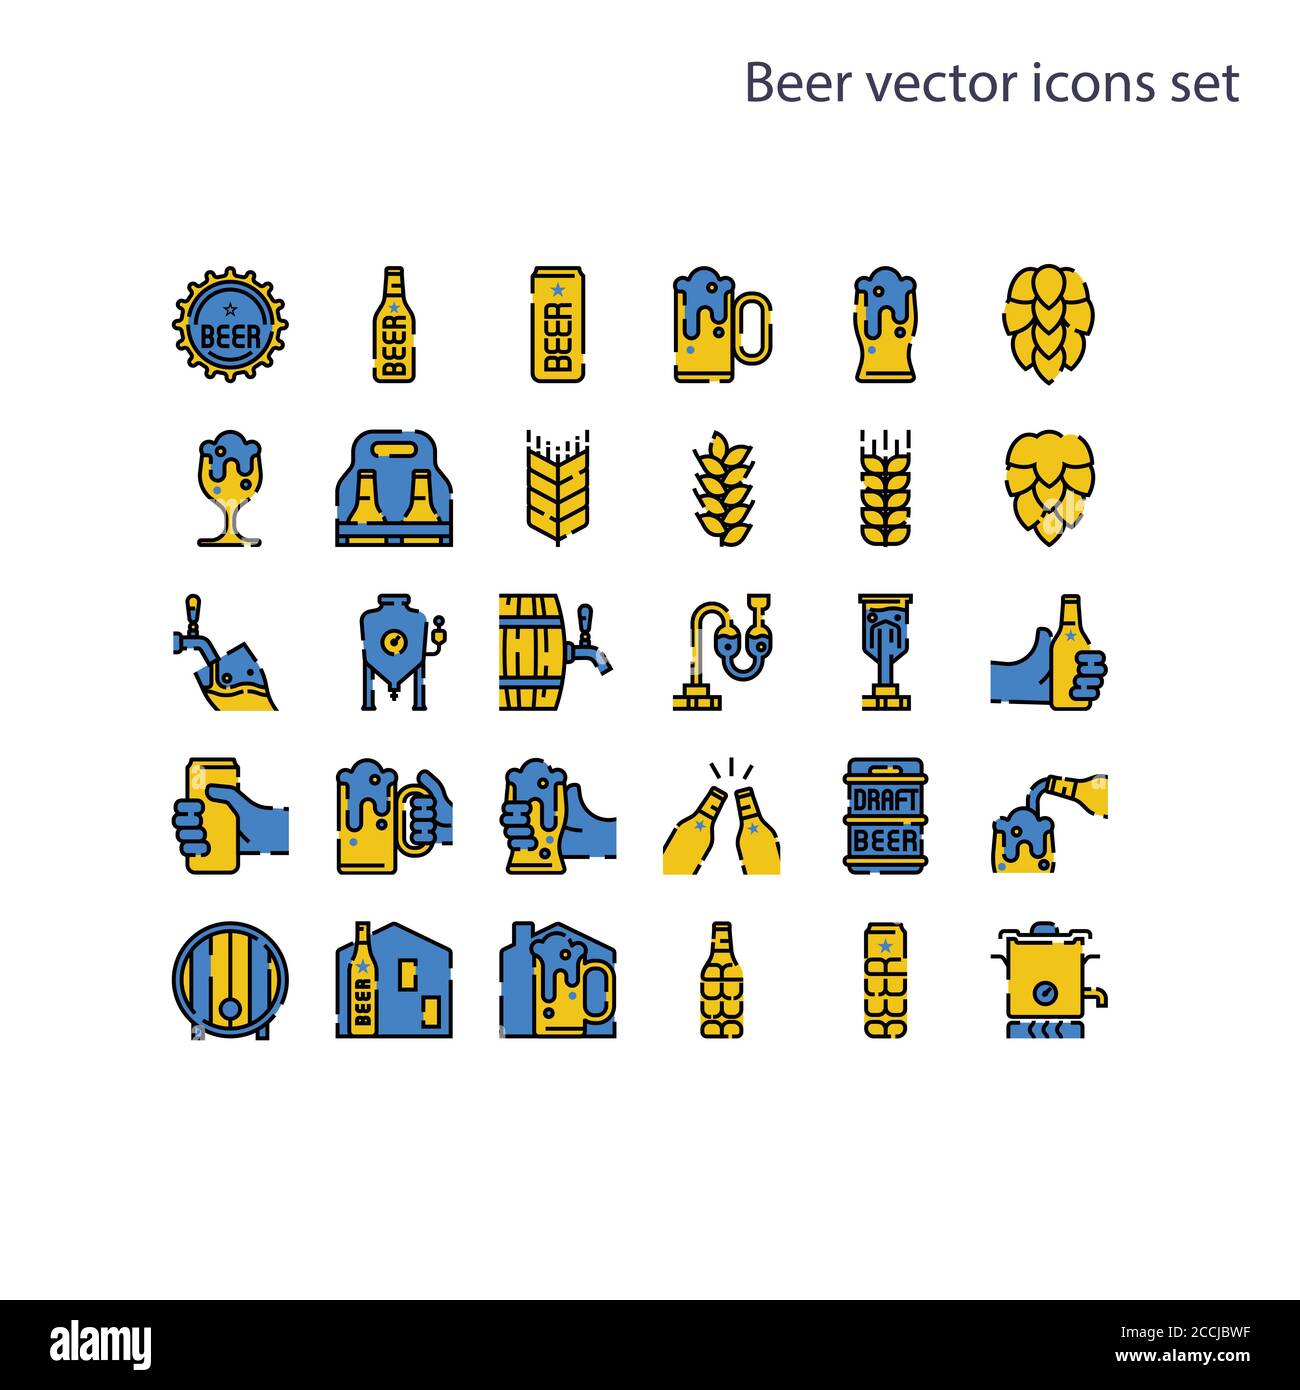 Elemento di base delle icone vettoriali della birra set.contiene una bottiglia, una lattina, un segno di luppolo, orzo e grano, serbatoio di fermentazione, caldaia, barile di birra alla spina, processo di birra, un Illustrazione Vettoriale